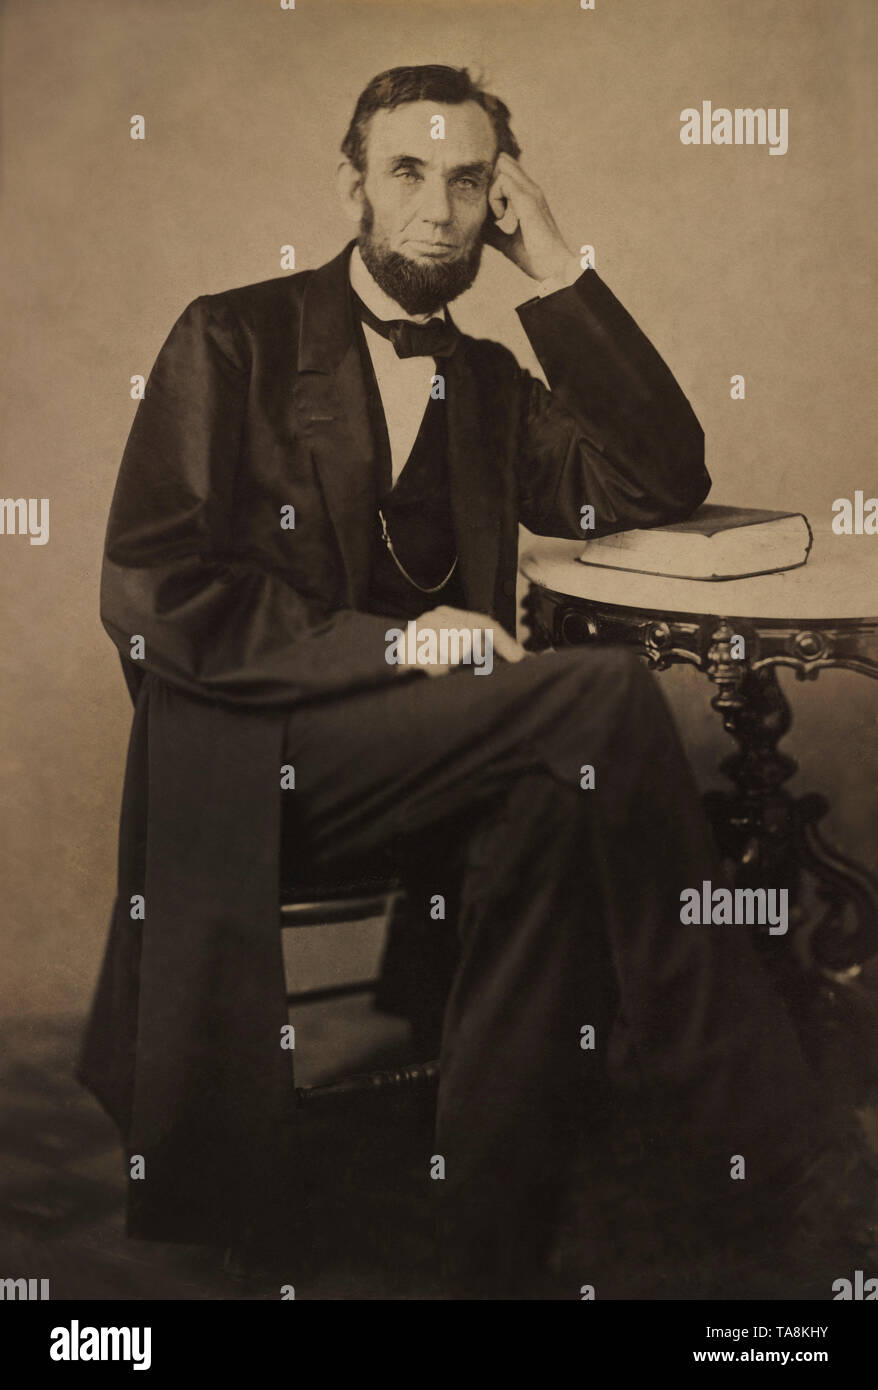 Un Portrait d'Abraham Lincoln assis, photo de Alexander Gardner, le 9 août 1863 Banque D'Images